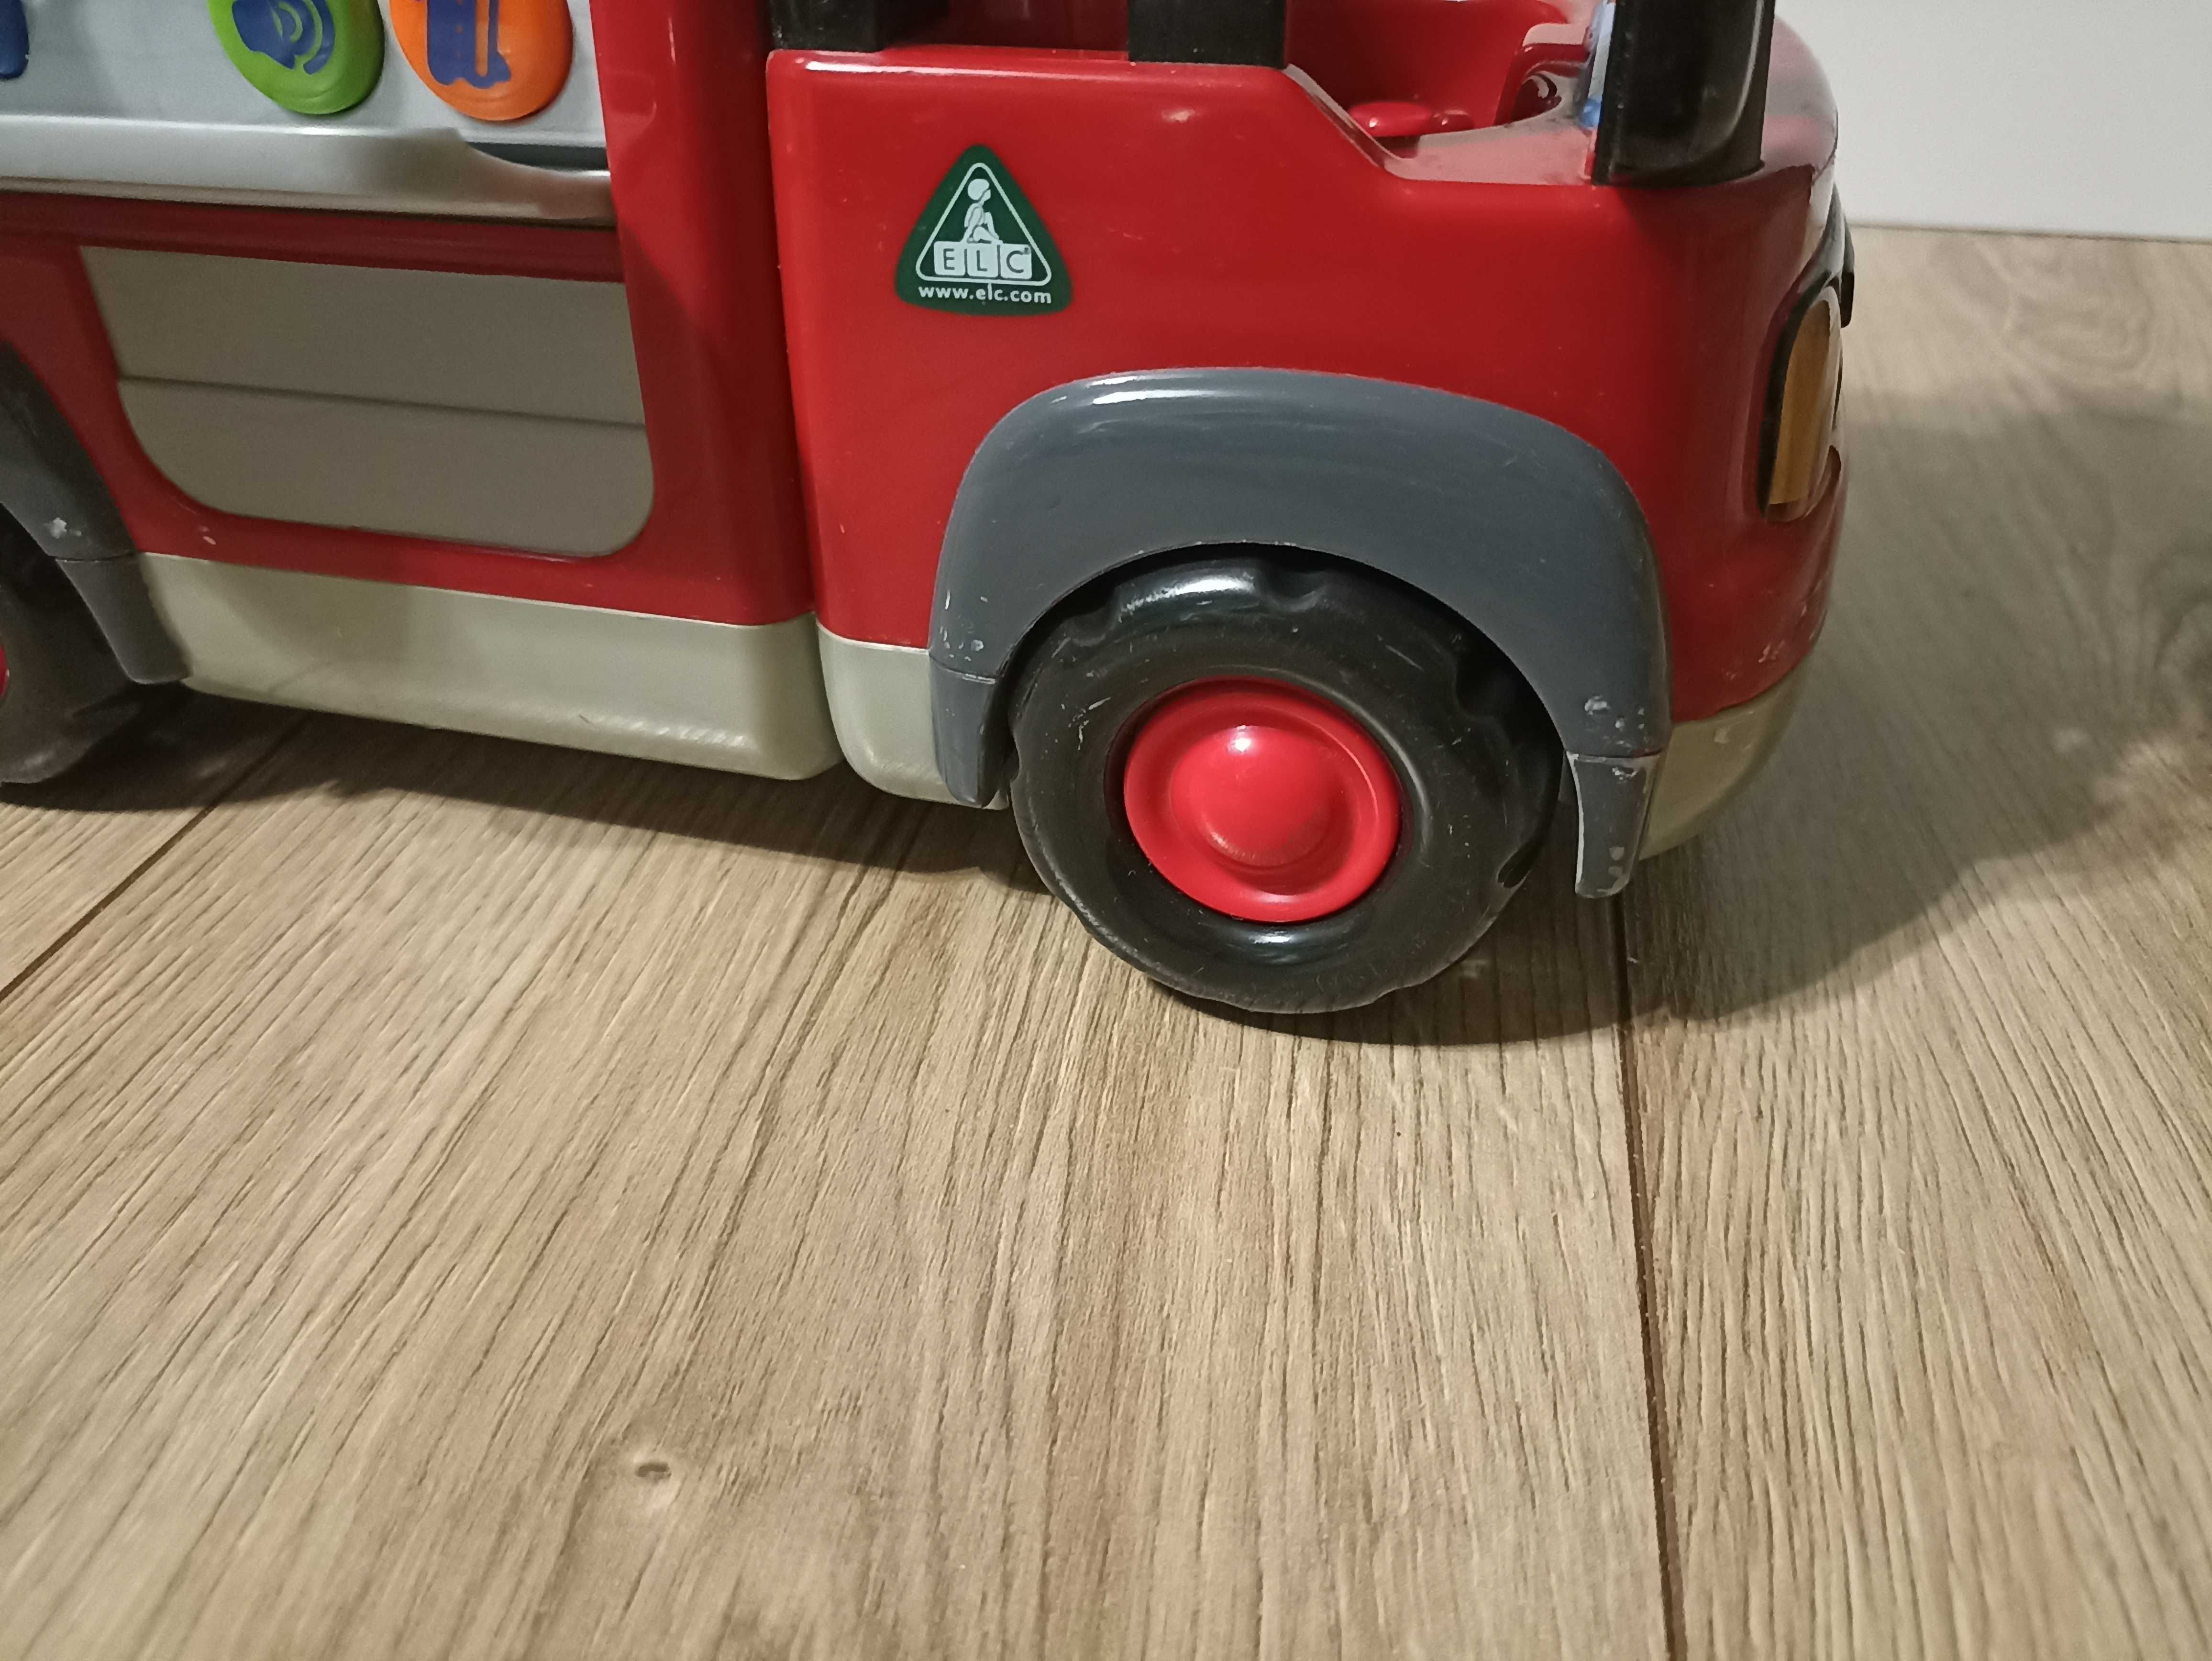 Zabawka wóz strażacki z dźwiękami